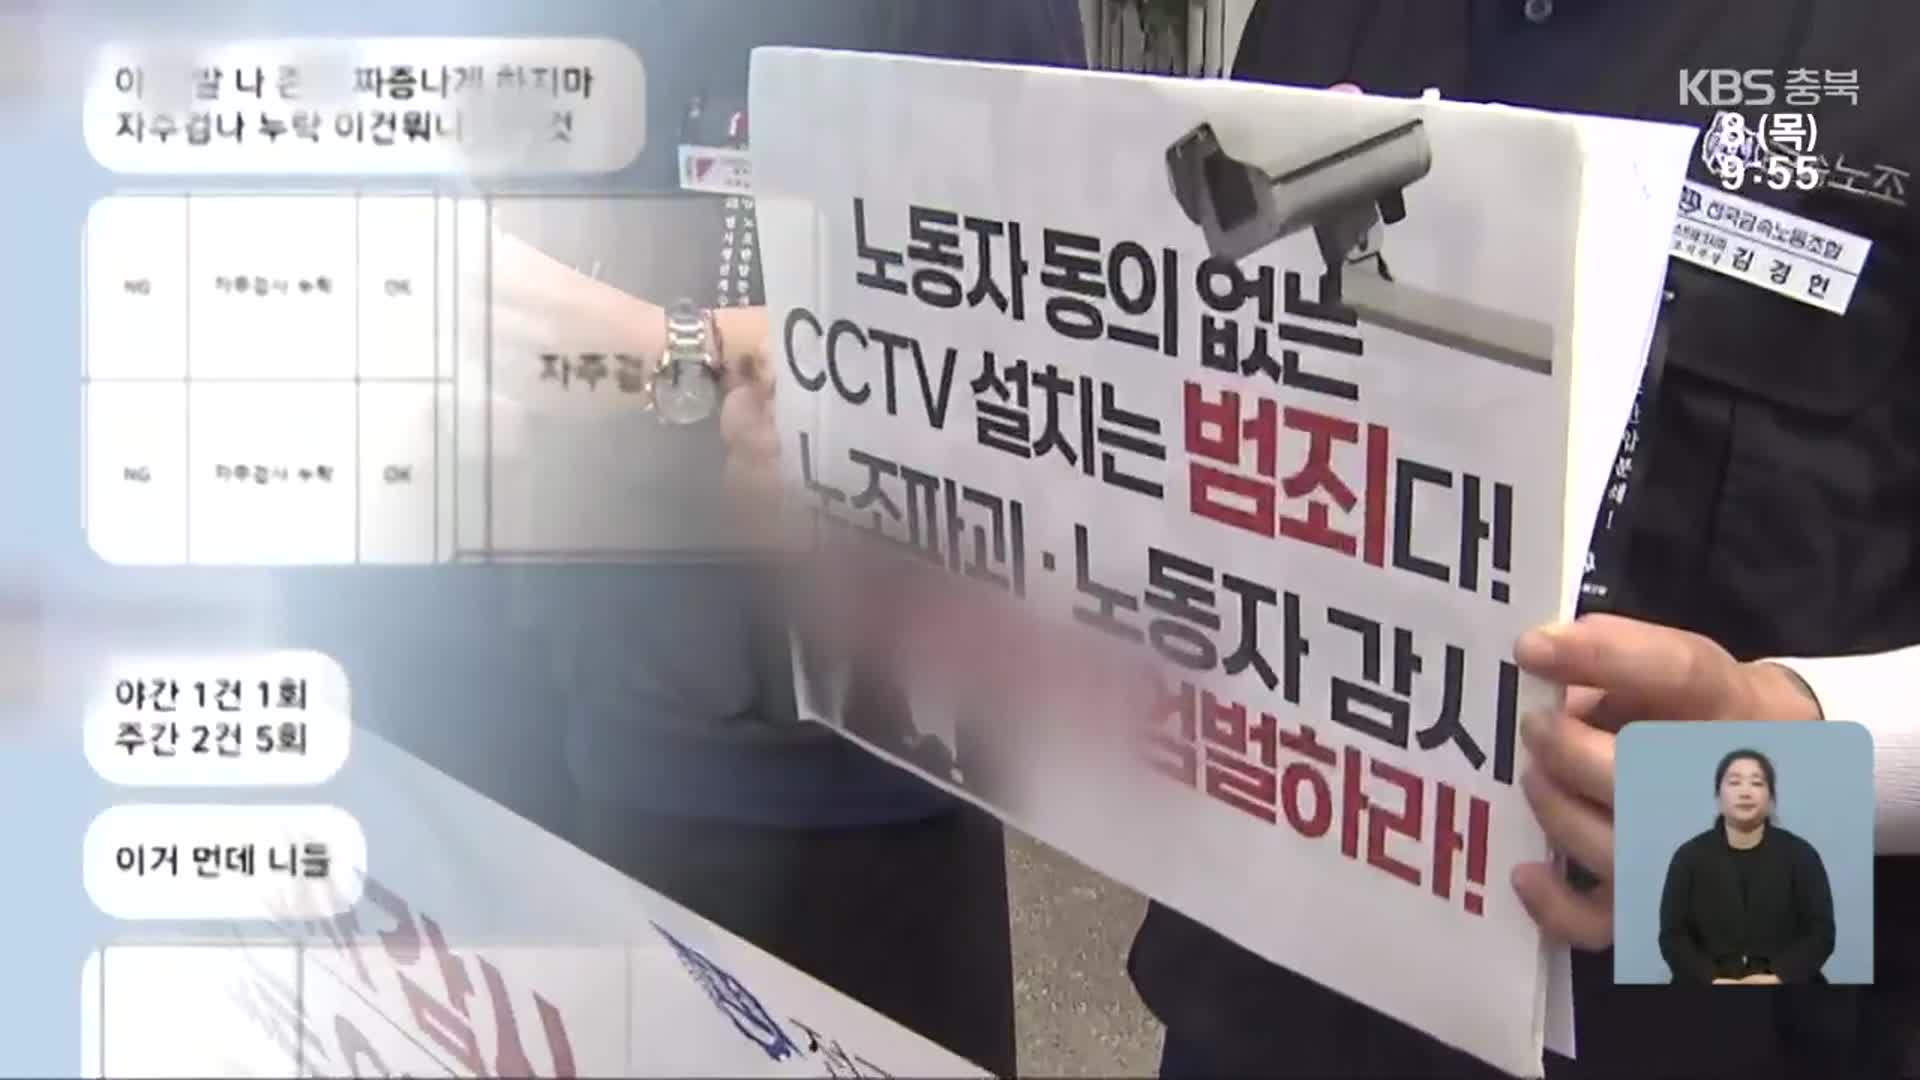 반도체 관련 업체 갑질 논란…노조 집단행동에 CCTV 설치